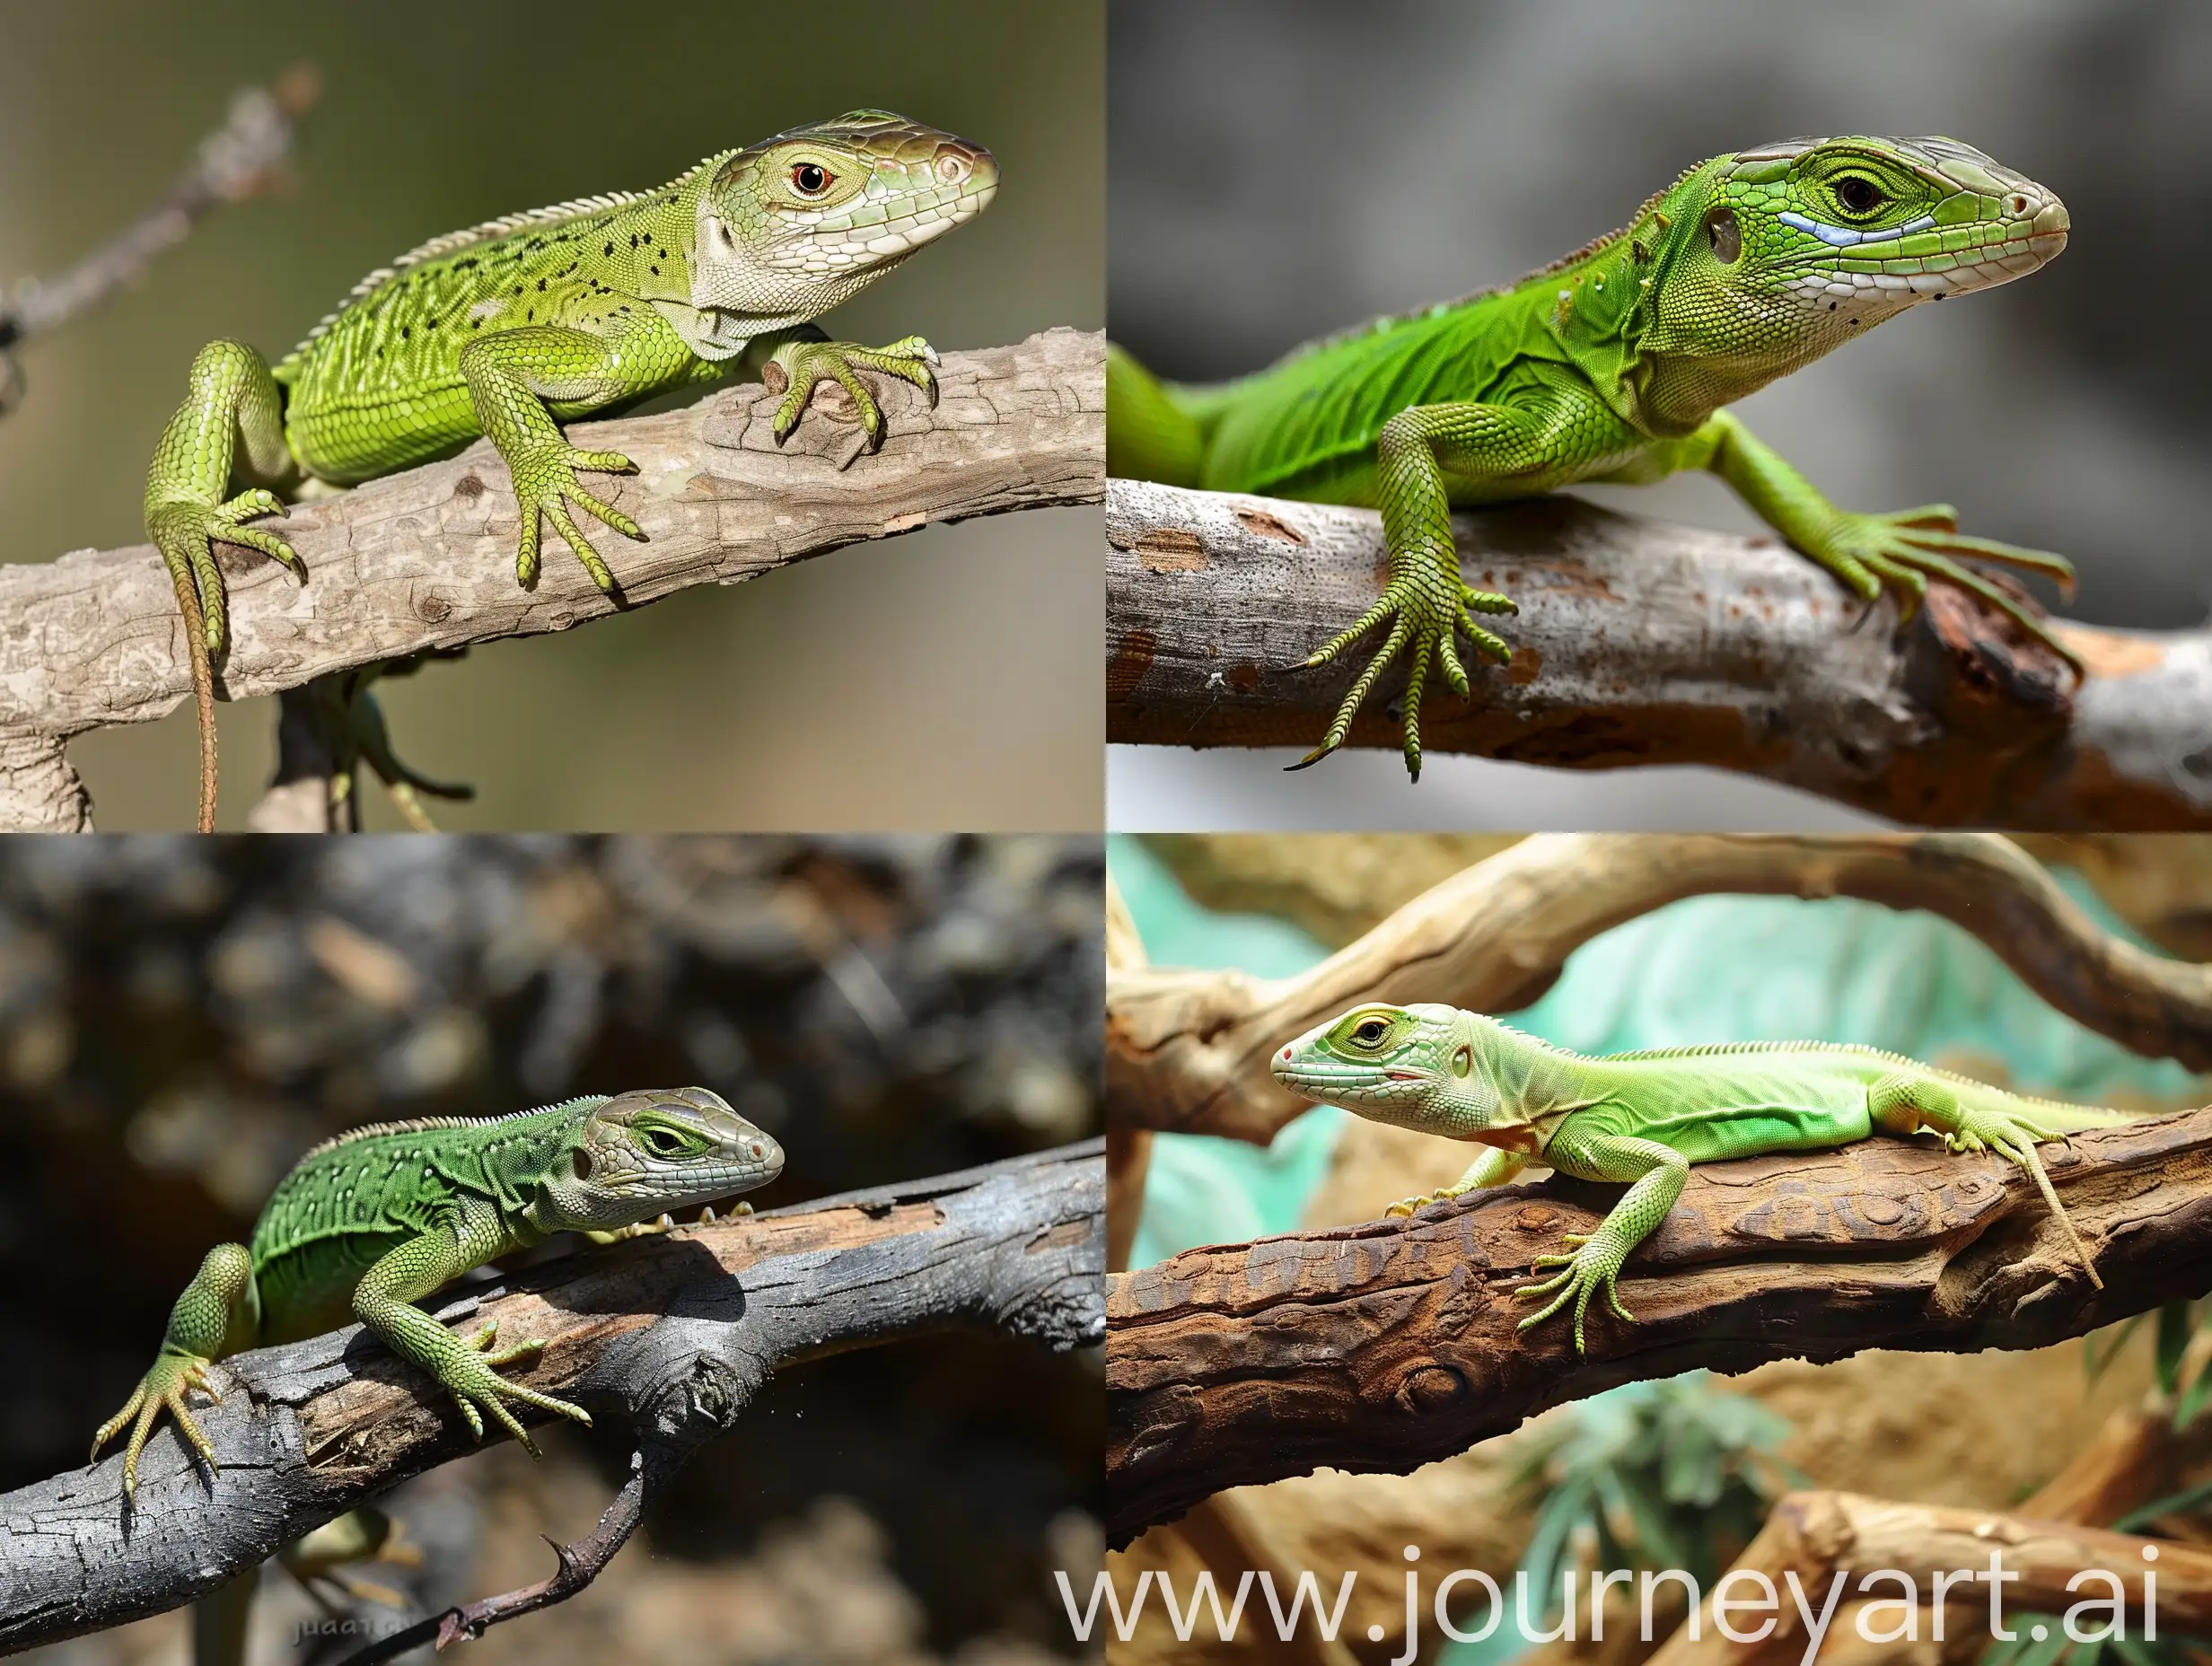 Green lizard on branch, green lizard sunbathing on branch, green lizard climb on wood, Jubata lizard 